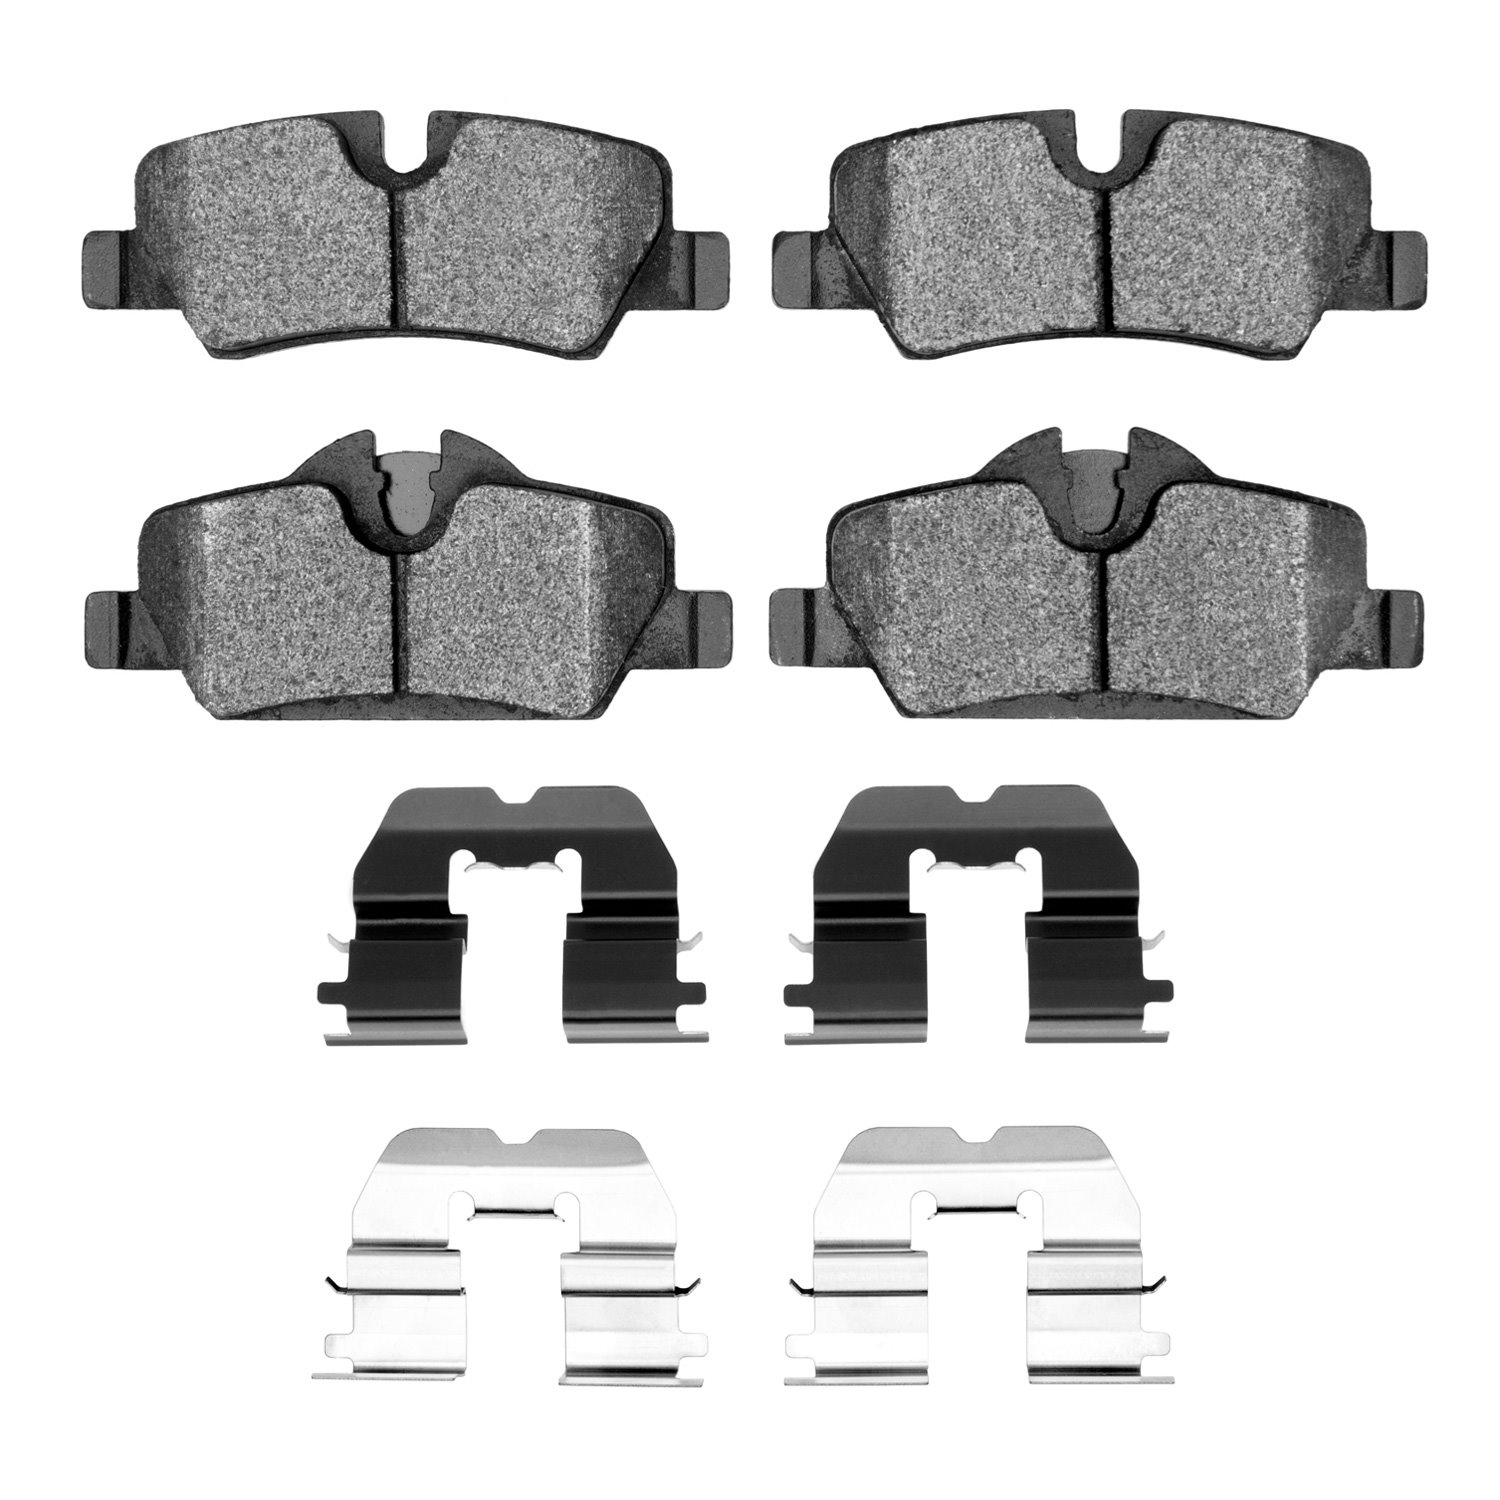 Euro Ceramic Brake Pads & Hardware Kit, Fits Select Mini, Position: Rear